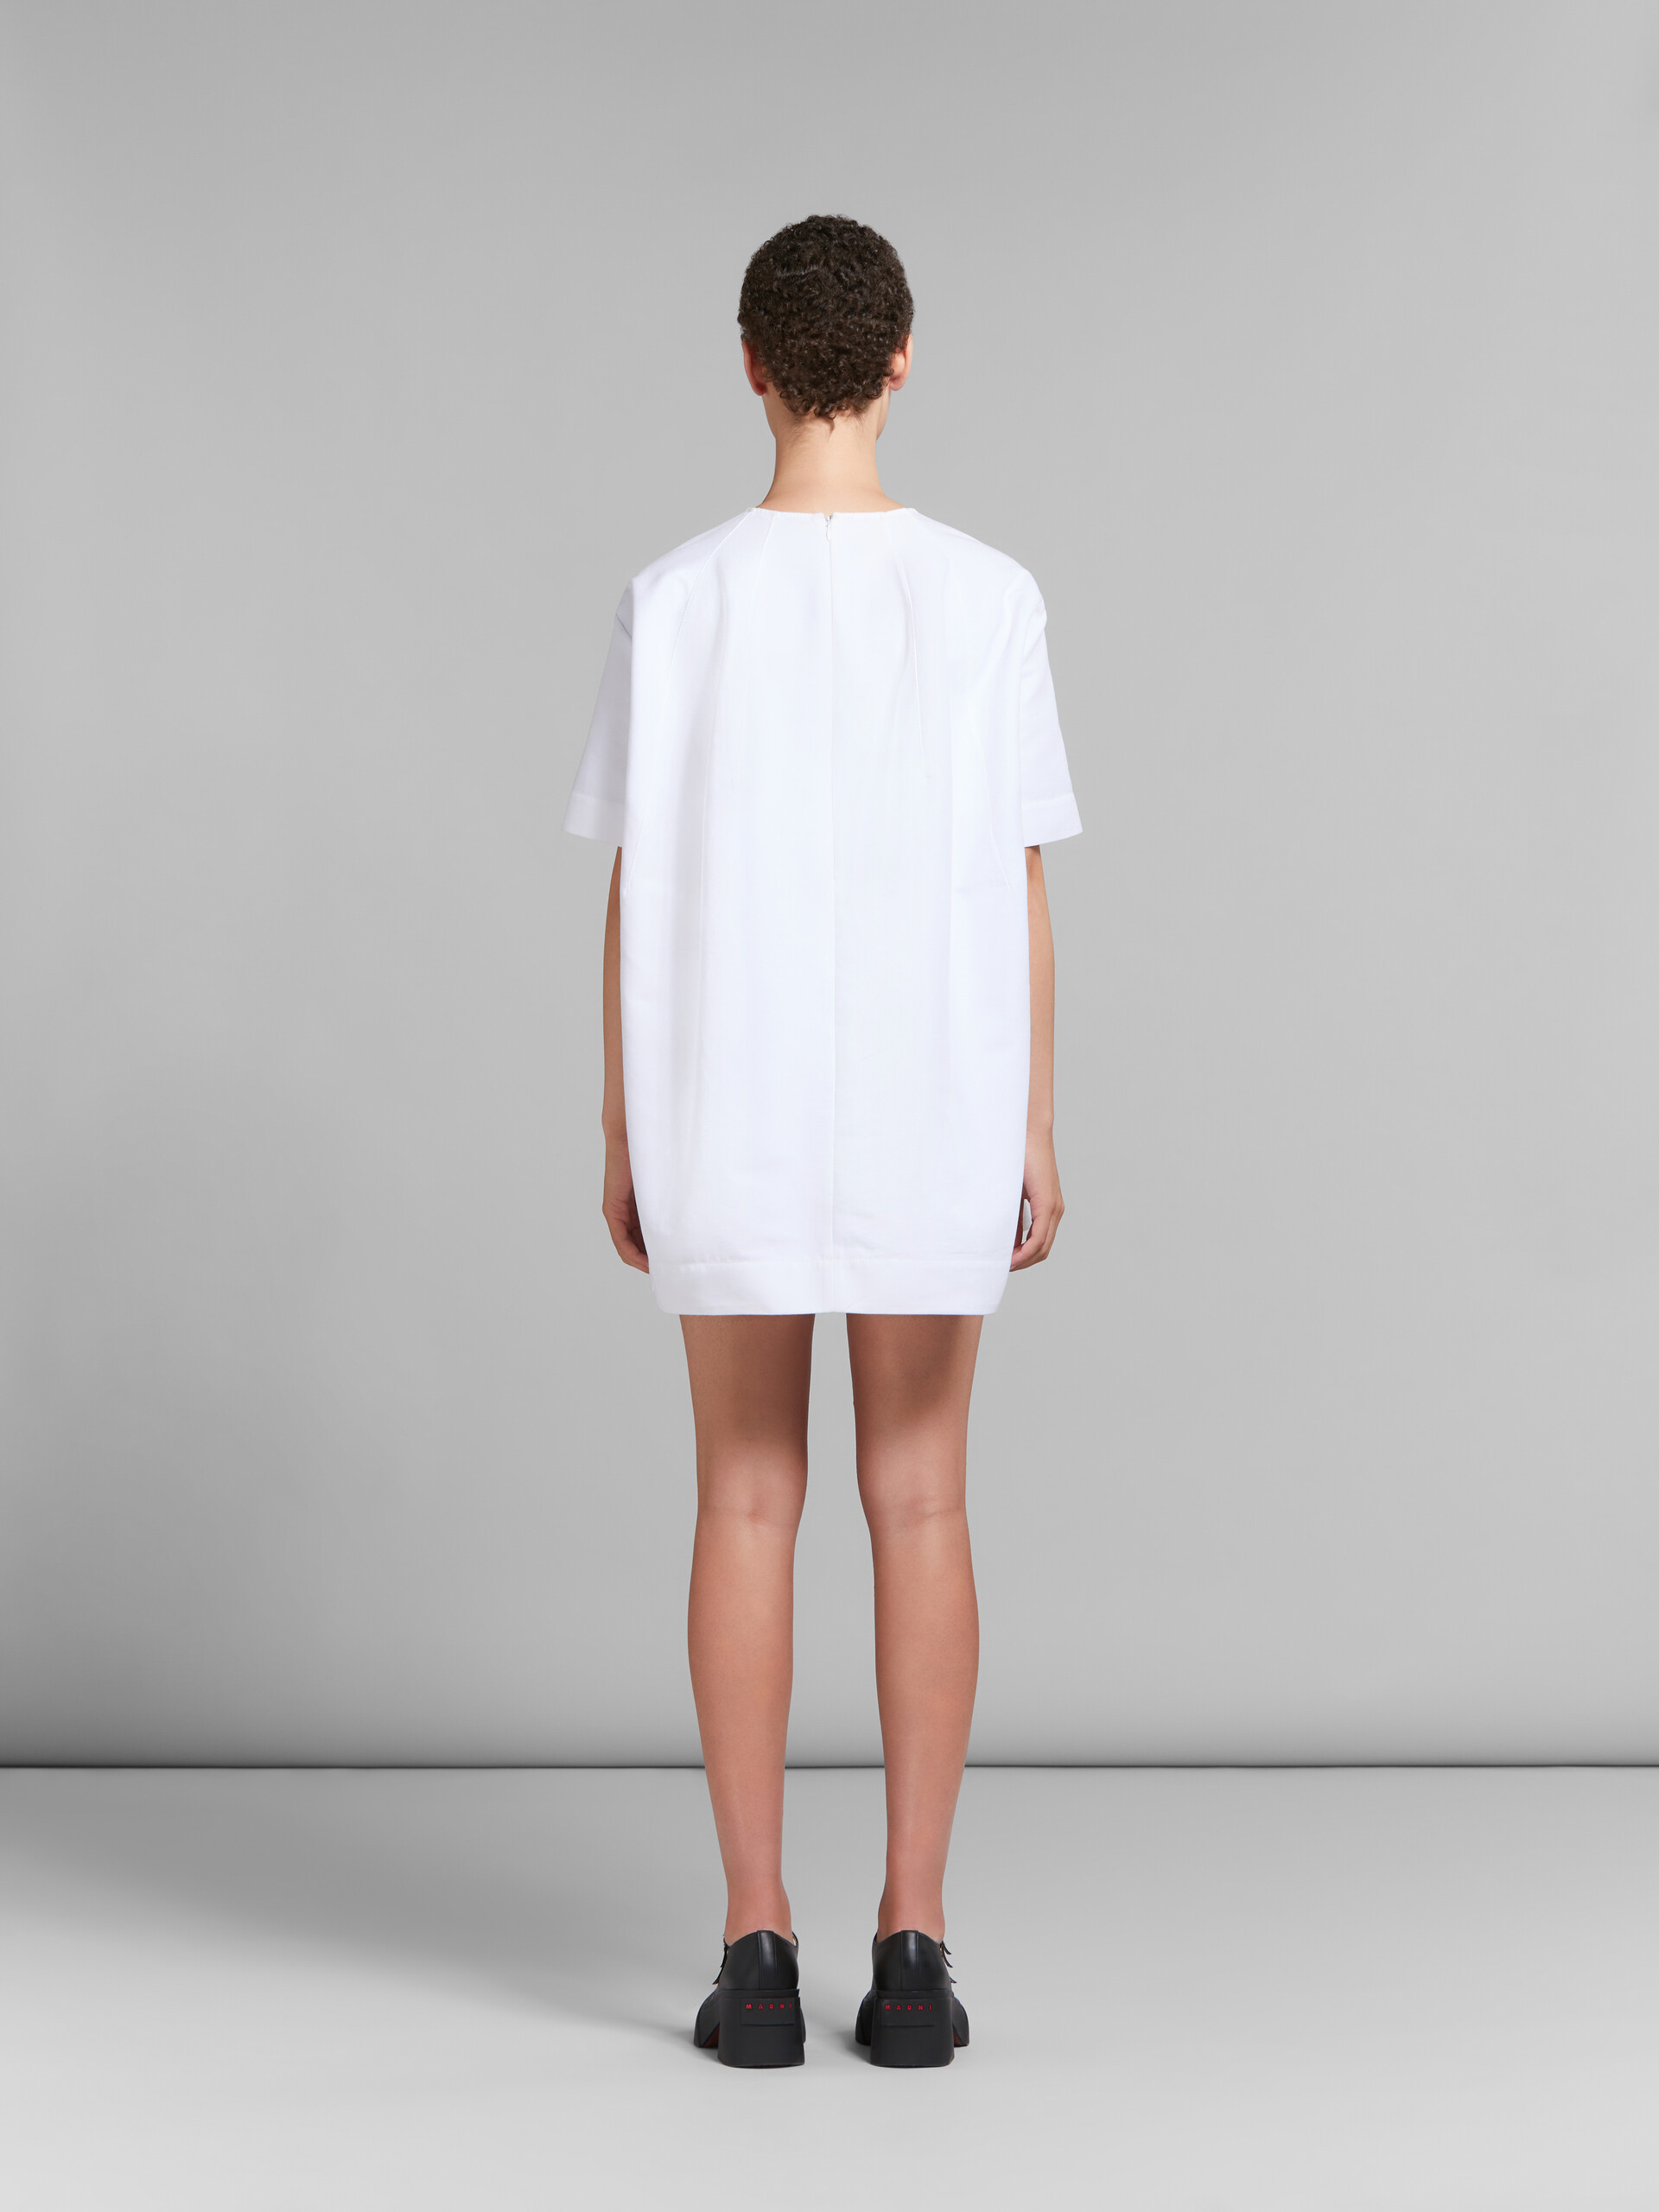 Vestido de cady blanco de corte mini cocoon - Vestidos - Image 3